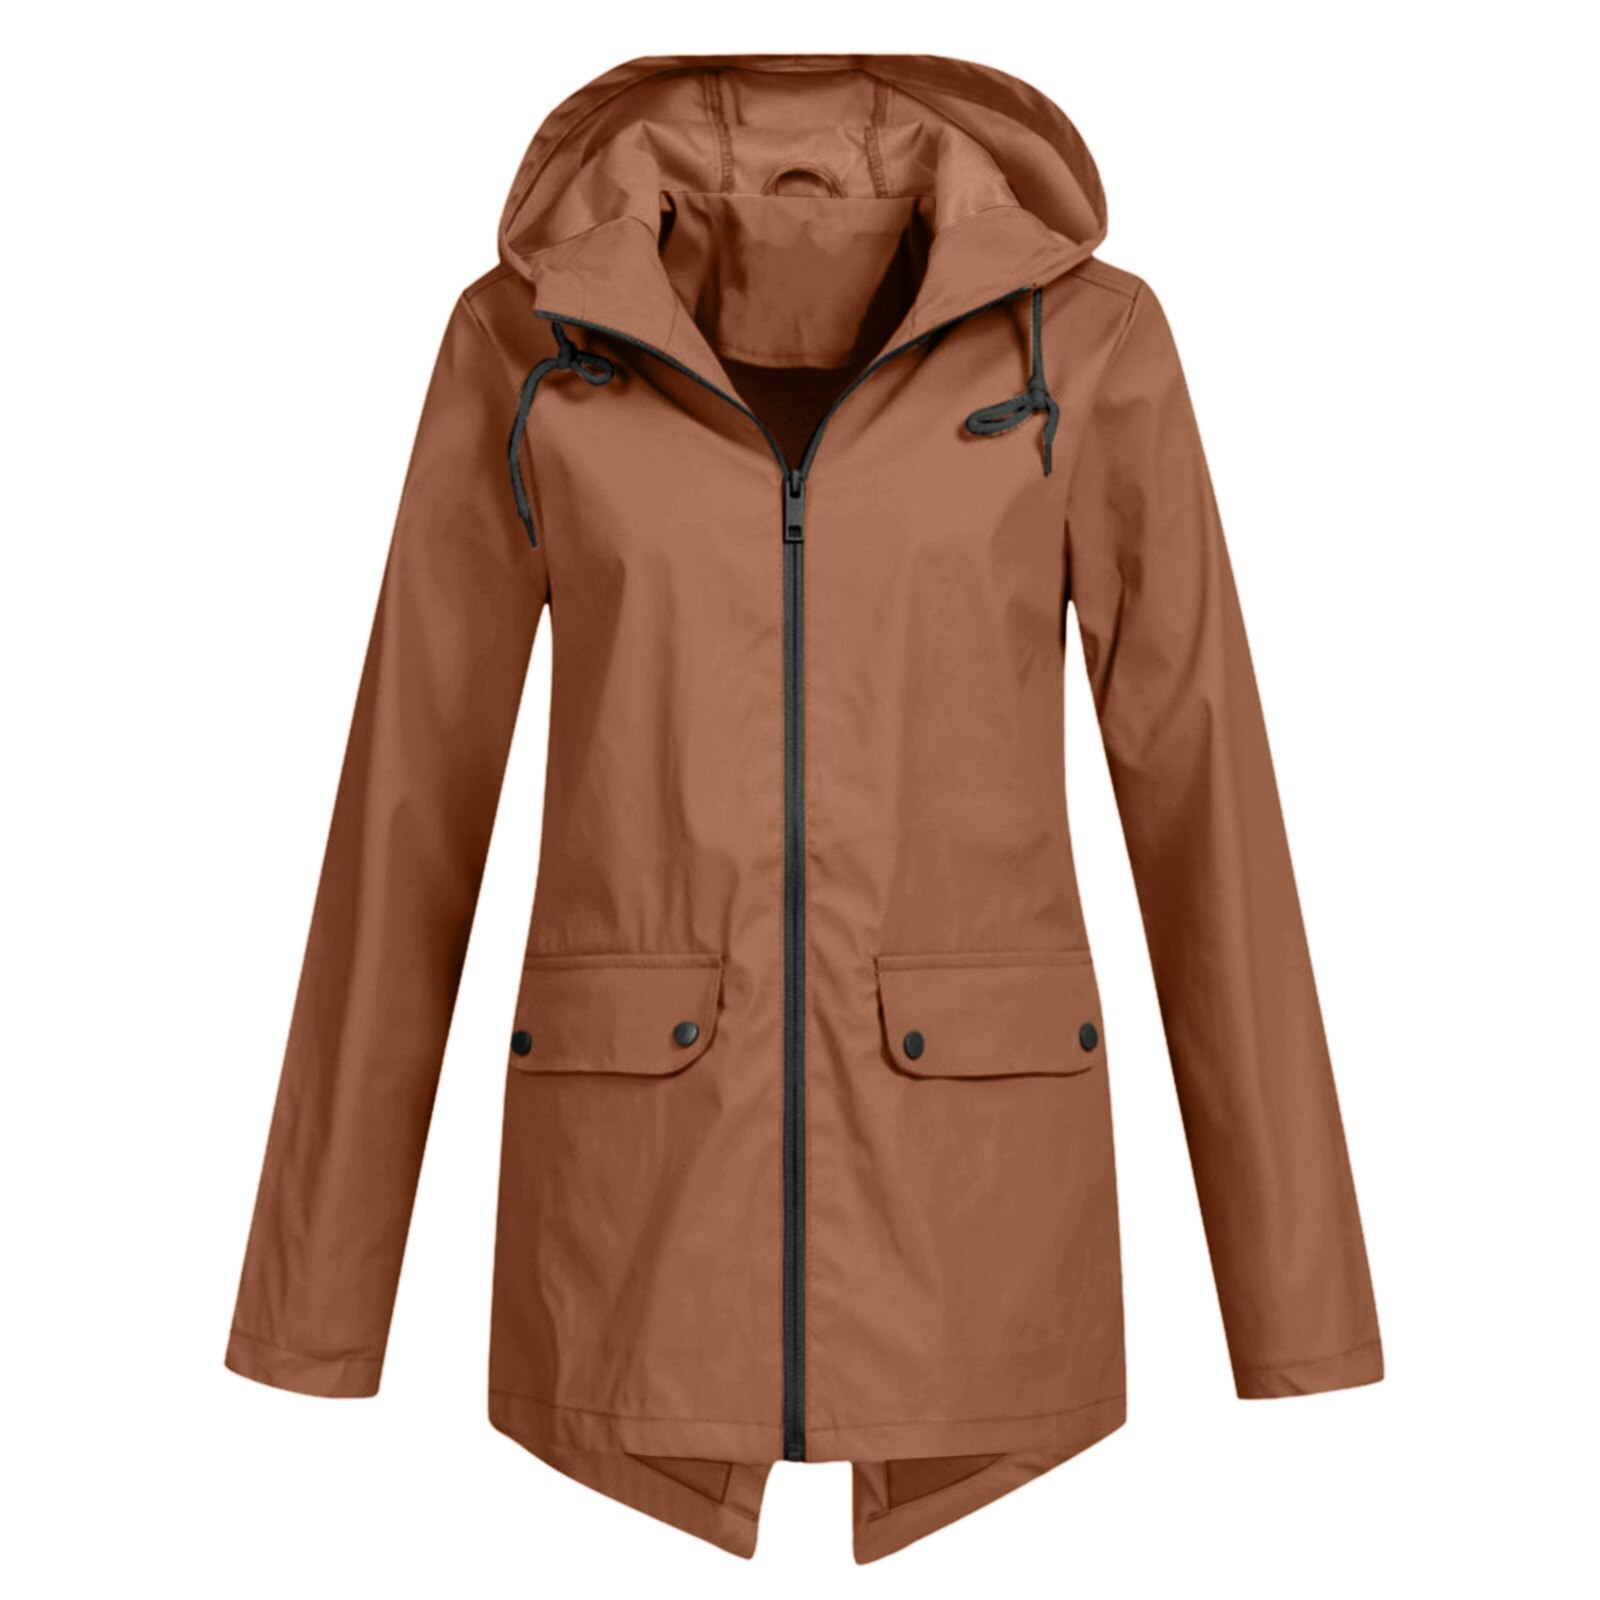 Raincoat Waterproof Jacket Zipper Hooded Lightweight Outdoor Waterproof Raincoat Jacket Thin Outdoor Women